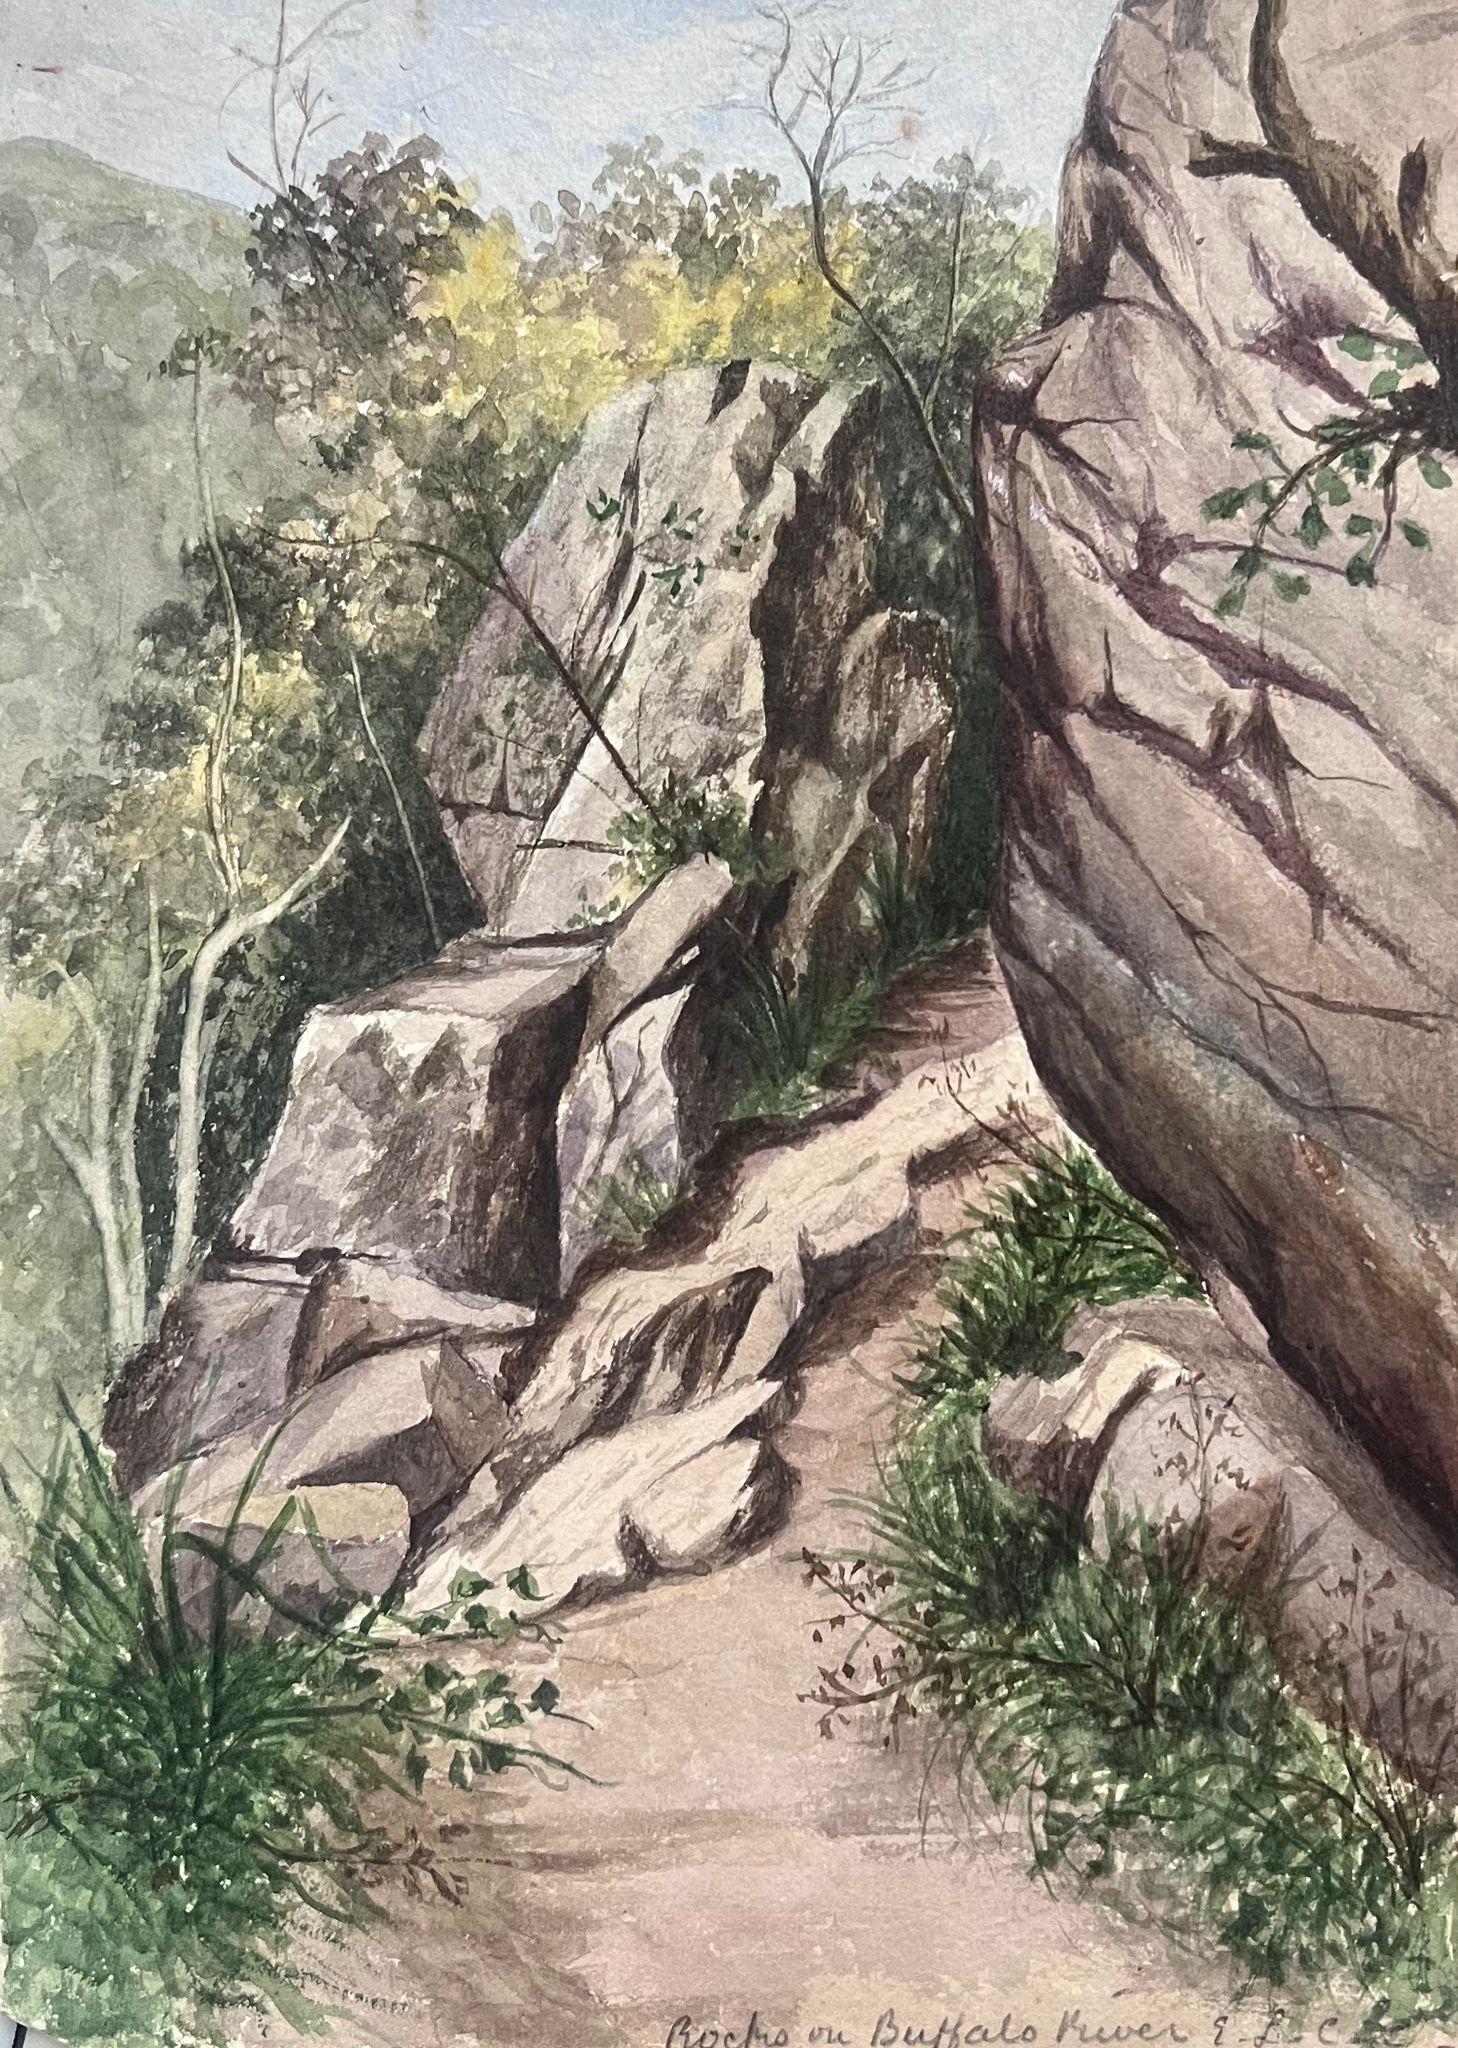 Landscape Painting Caroline Worsley - Fine Antique British Watercolour Painting Rocks Path To Buffalo River Landscape (peinture à l'aquarelle de rochers vers la rivière Buffalo) 